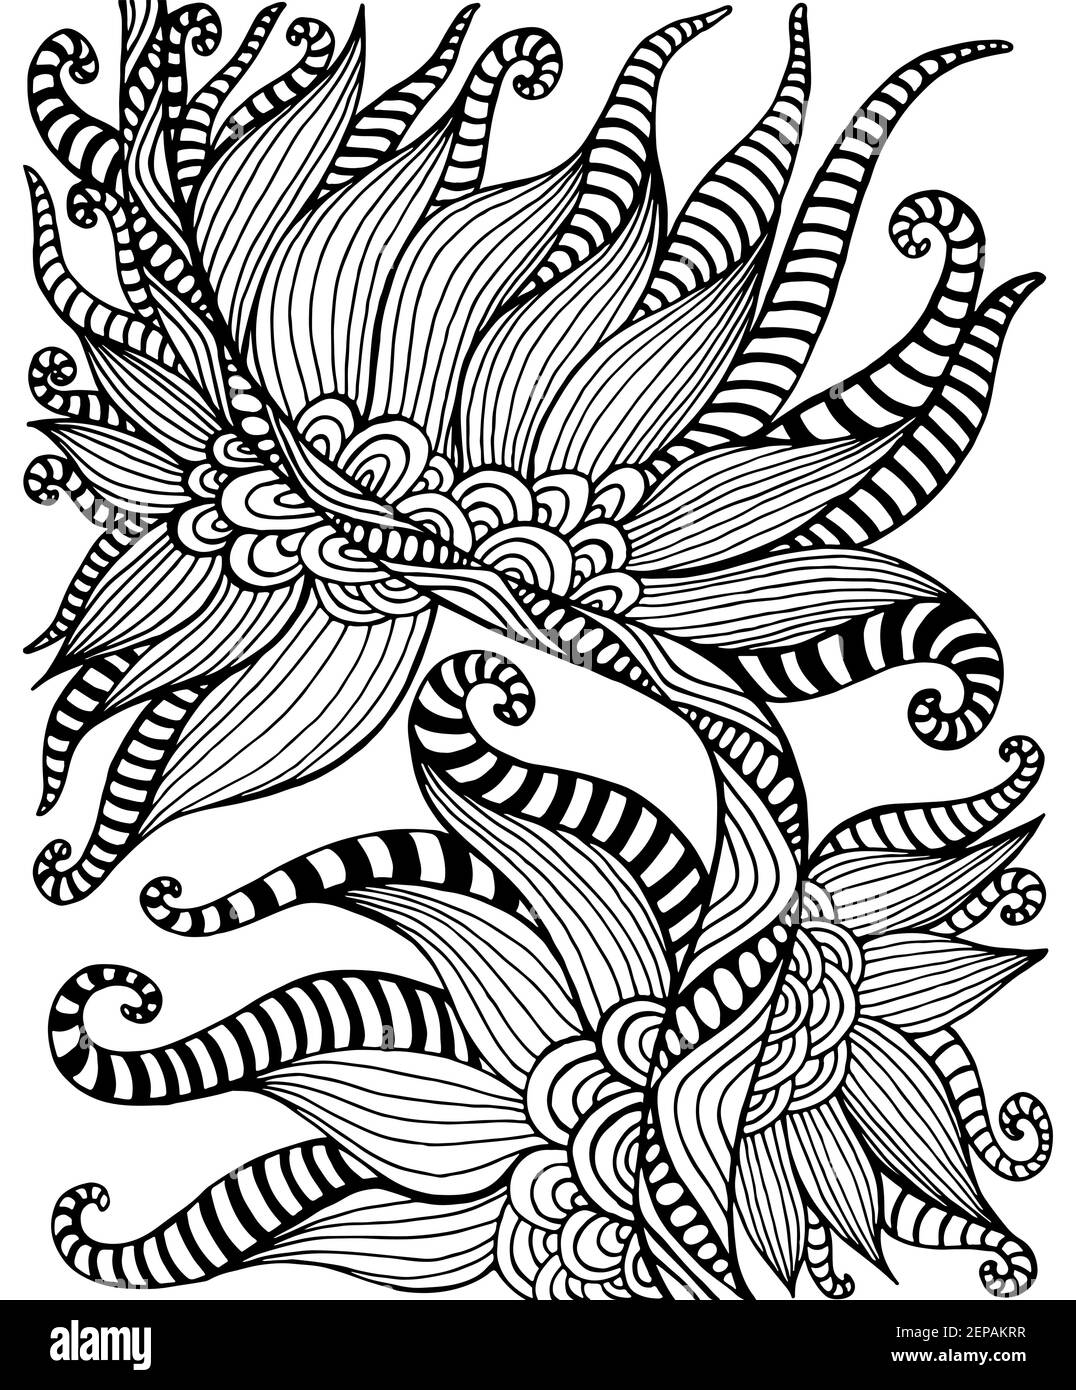 Page de coloriage noir et blanc de motif floral bohème ornemental. Élément décoratif de style caniche abstrait, isolé sur fond blanc. Main vectorielle Illustration de Vecteur